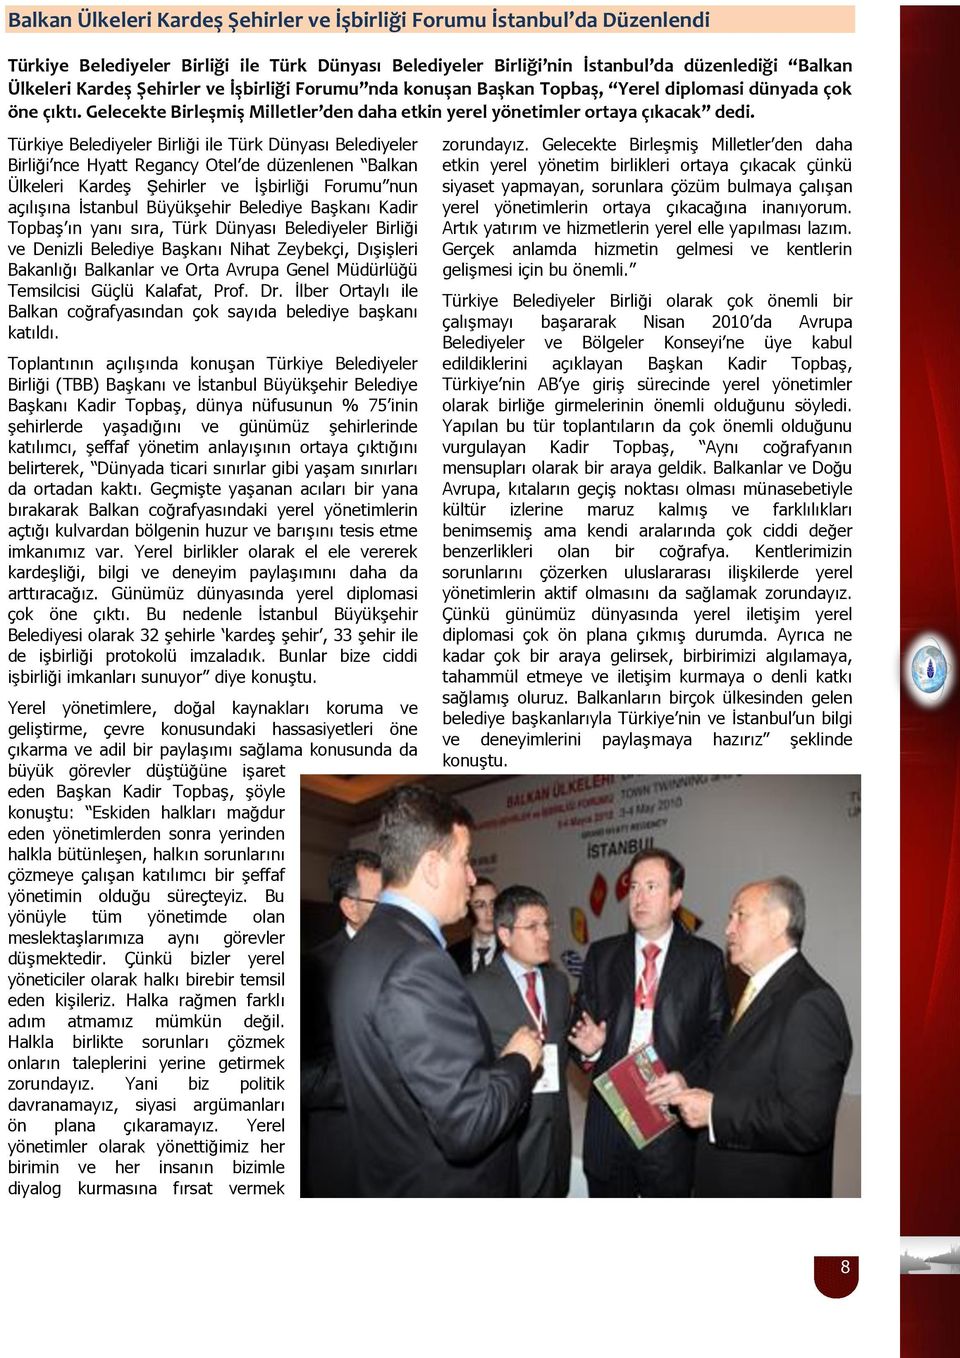 Türkiye Belediyeler Birliği ile Türk Dünyası Belediyeler Birliği nce Hyatt Regancy Otel de düzenlenen Balkan Ülkeleri Kardeş Şehirler ve İşbirliği Forumu nun açılışına İstanbul Büyükşehir Belediye